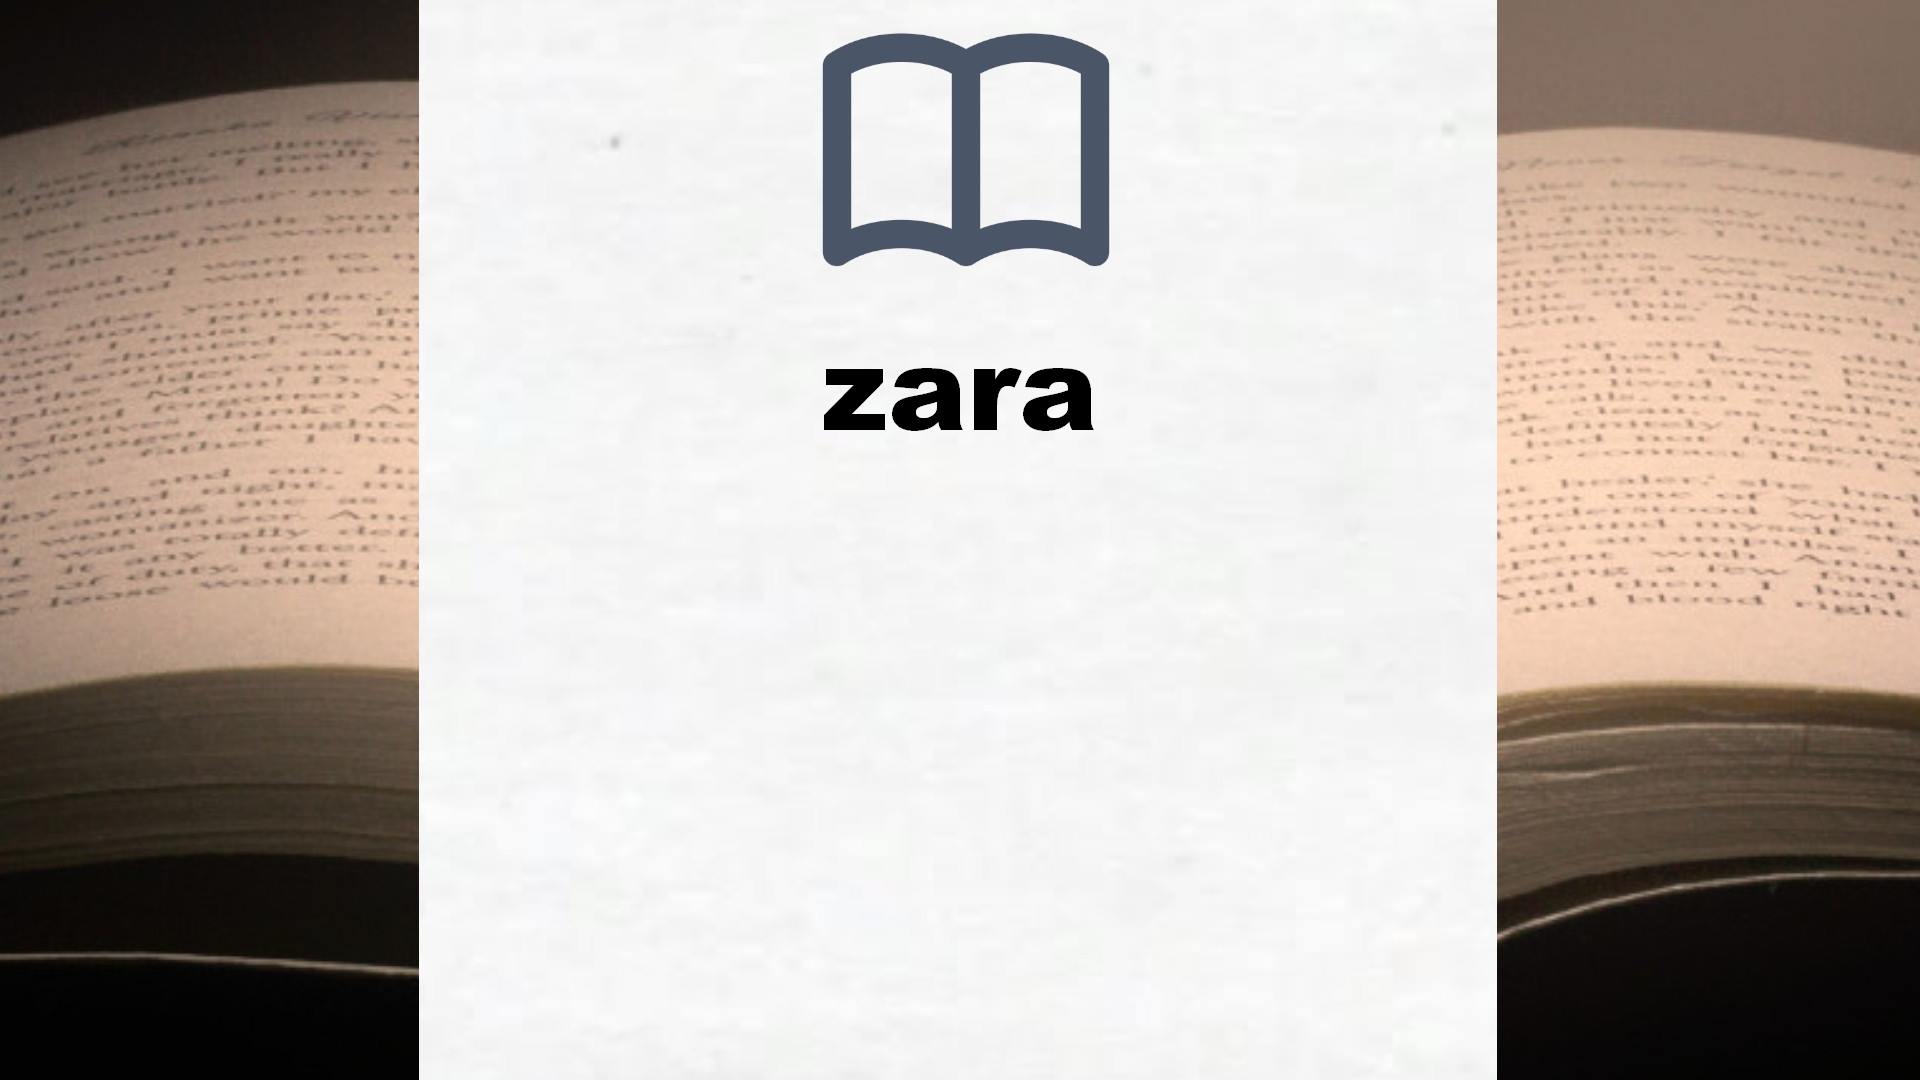 Libros sobre zara